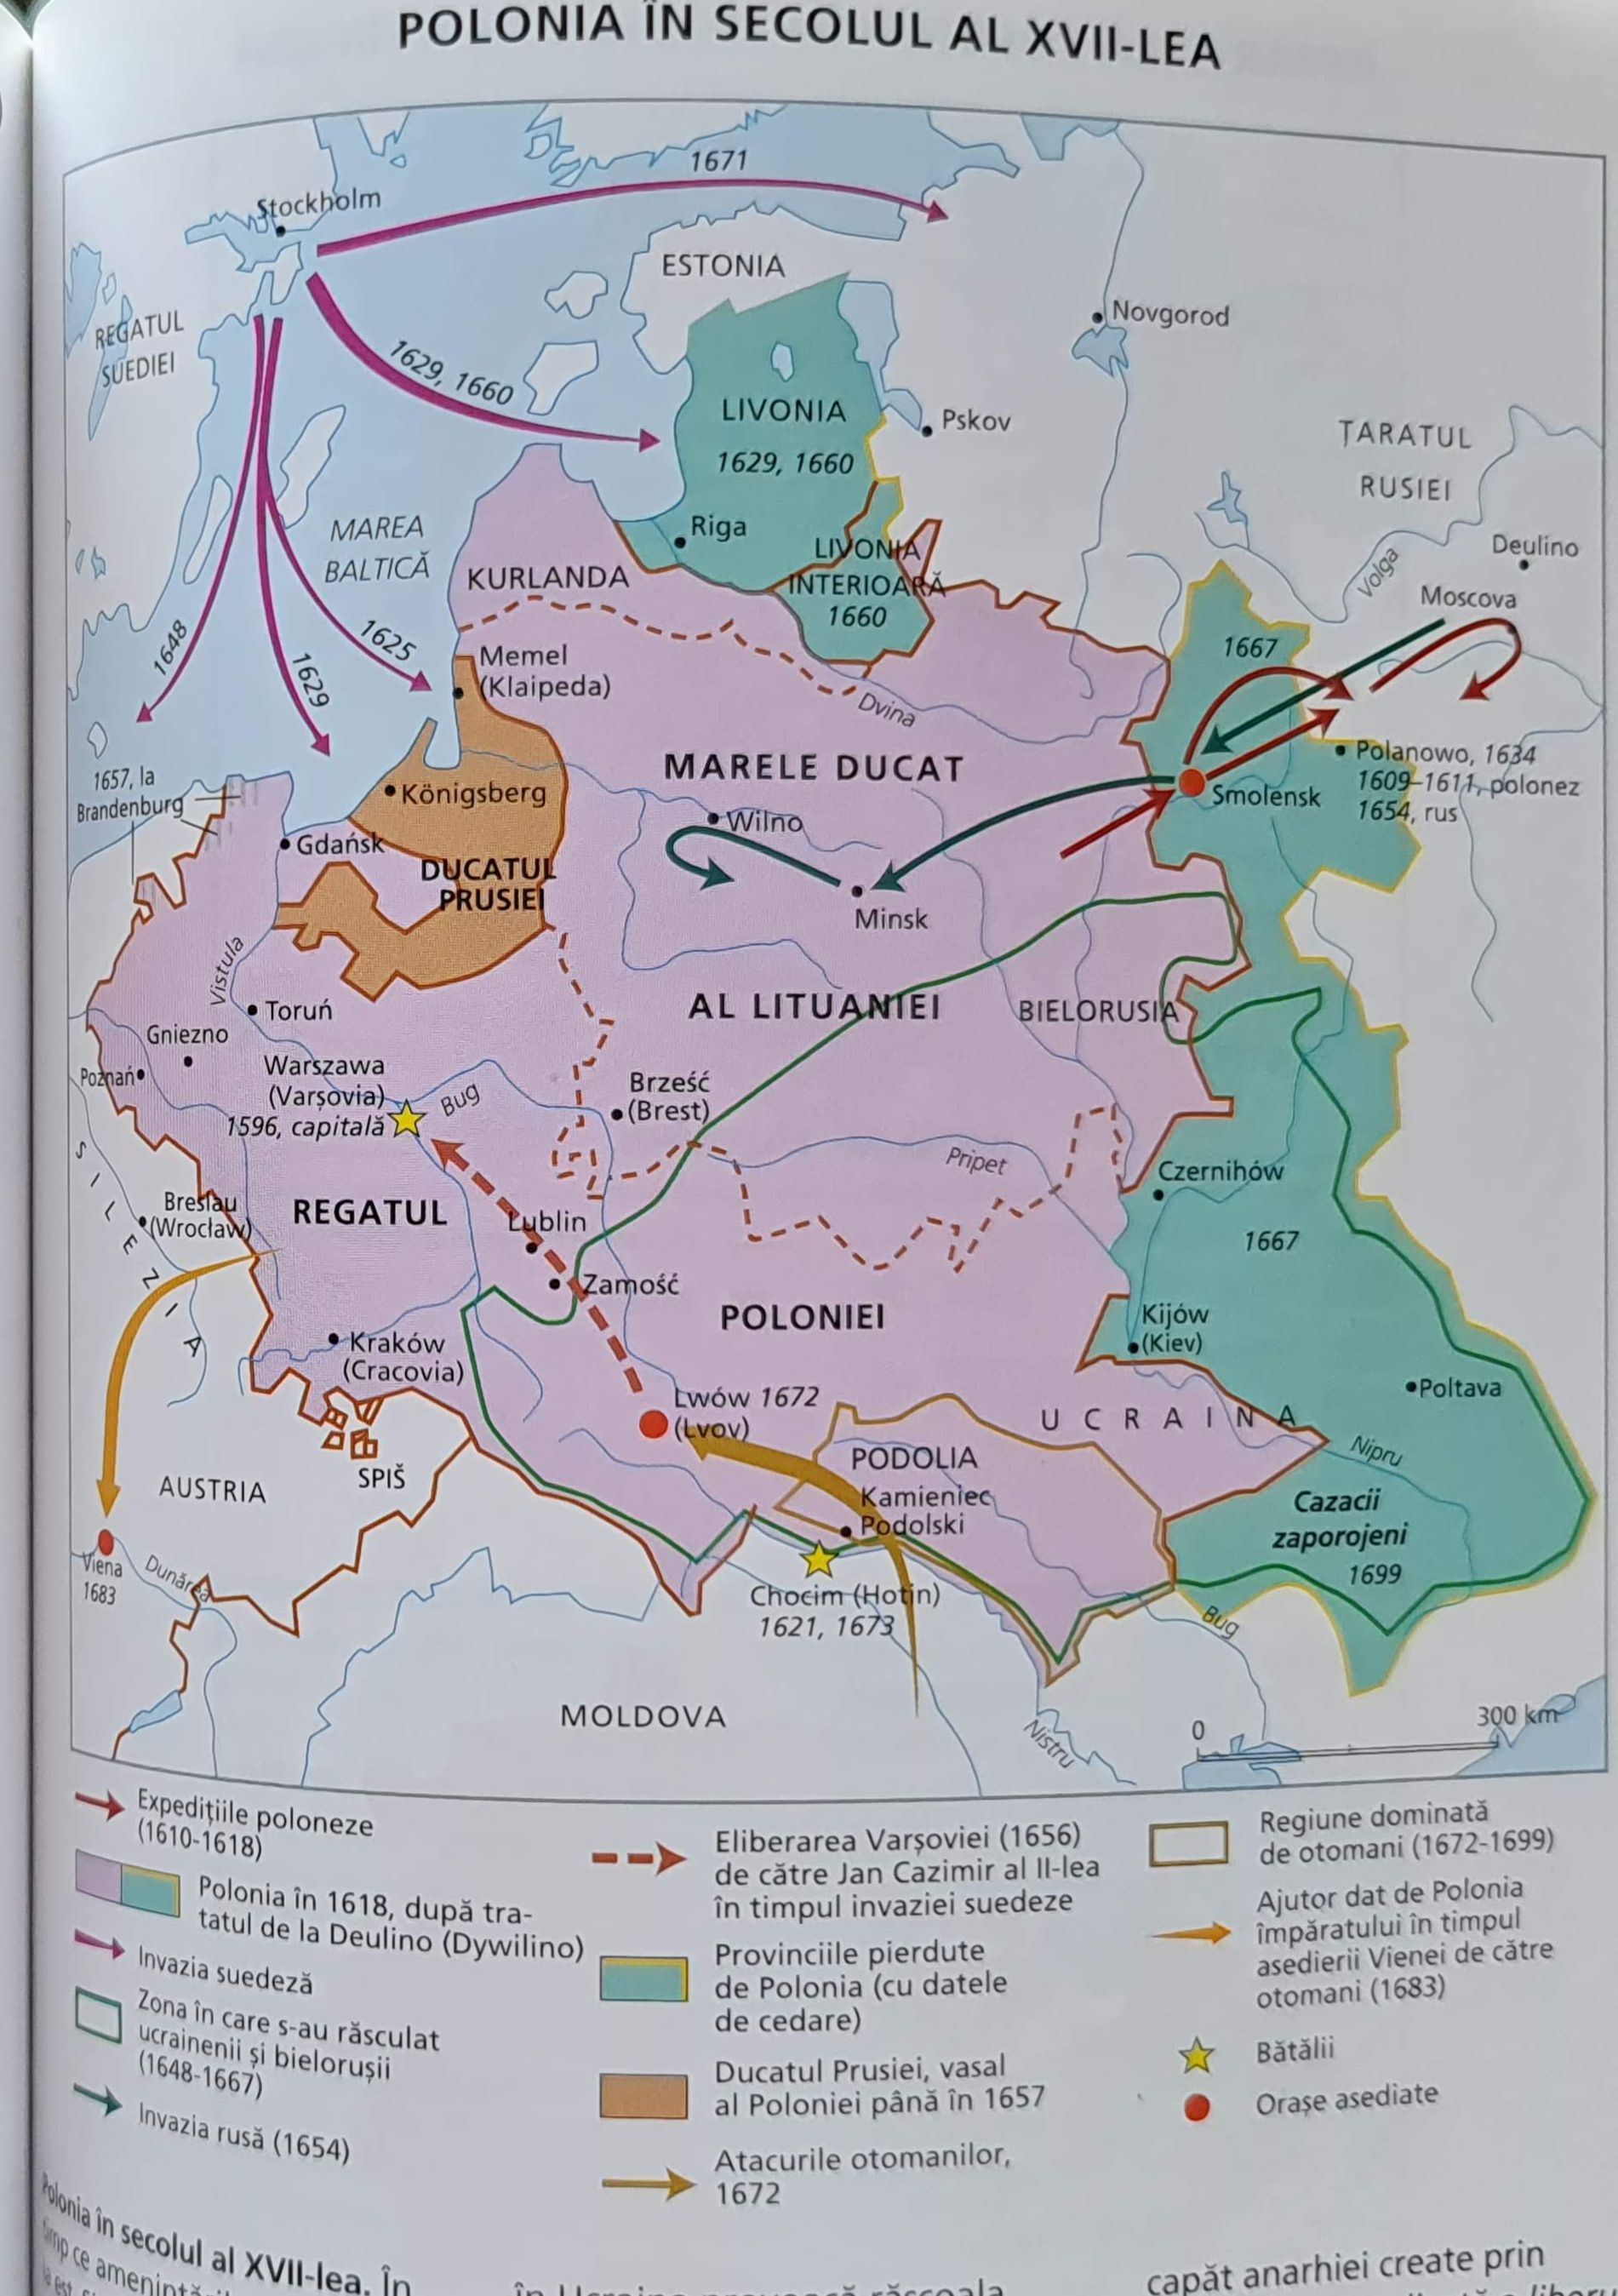 Vacant Unauthorized Perpetual Rusia vs Ucraina - Cum au început acum peste 350 de ani relațiile agitate  dintre cele două state și cum se războiesc istoricii pe moștenirea cazacilor  - HotNews.ro